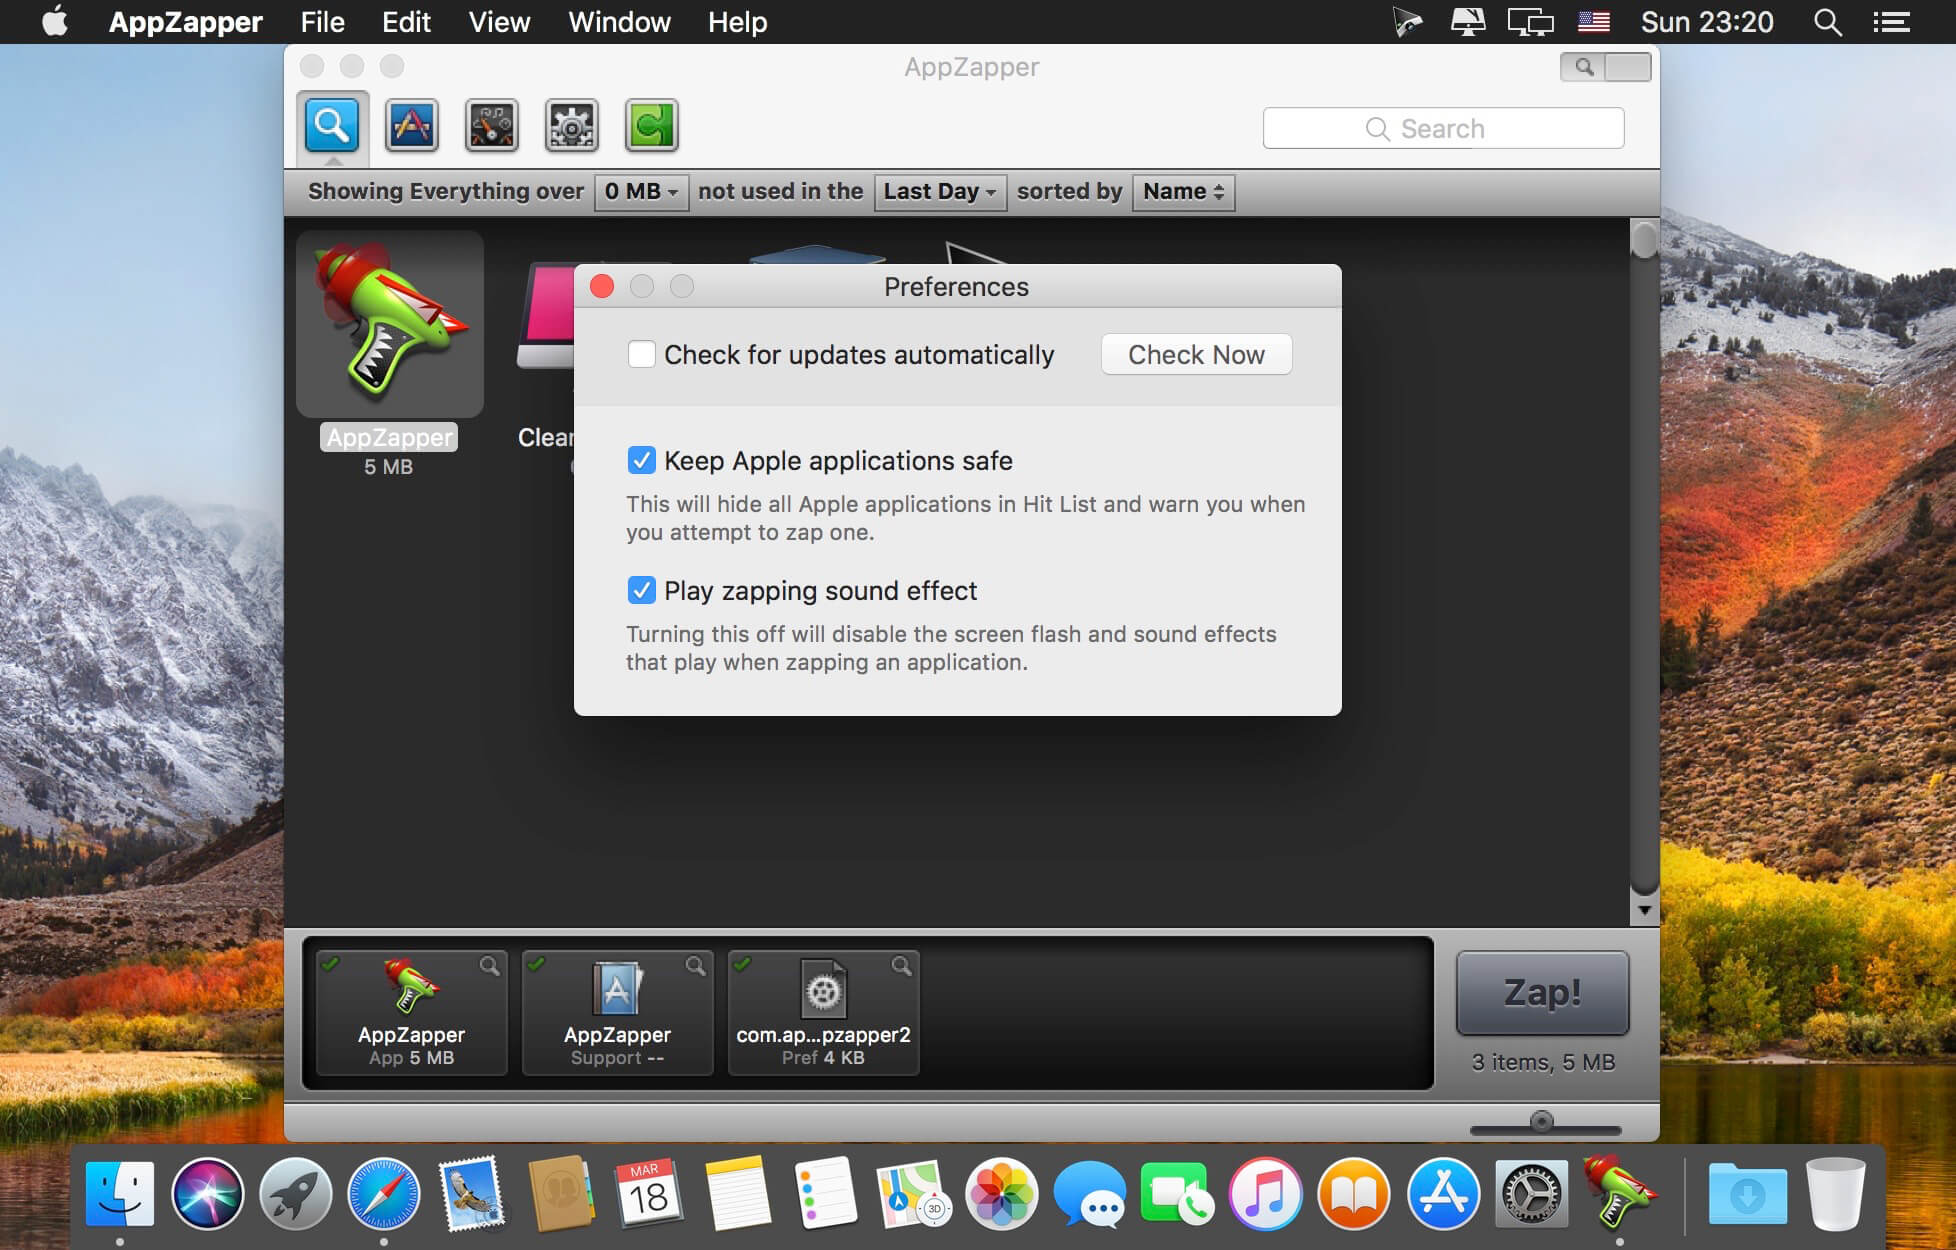 appzapper mac free download